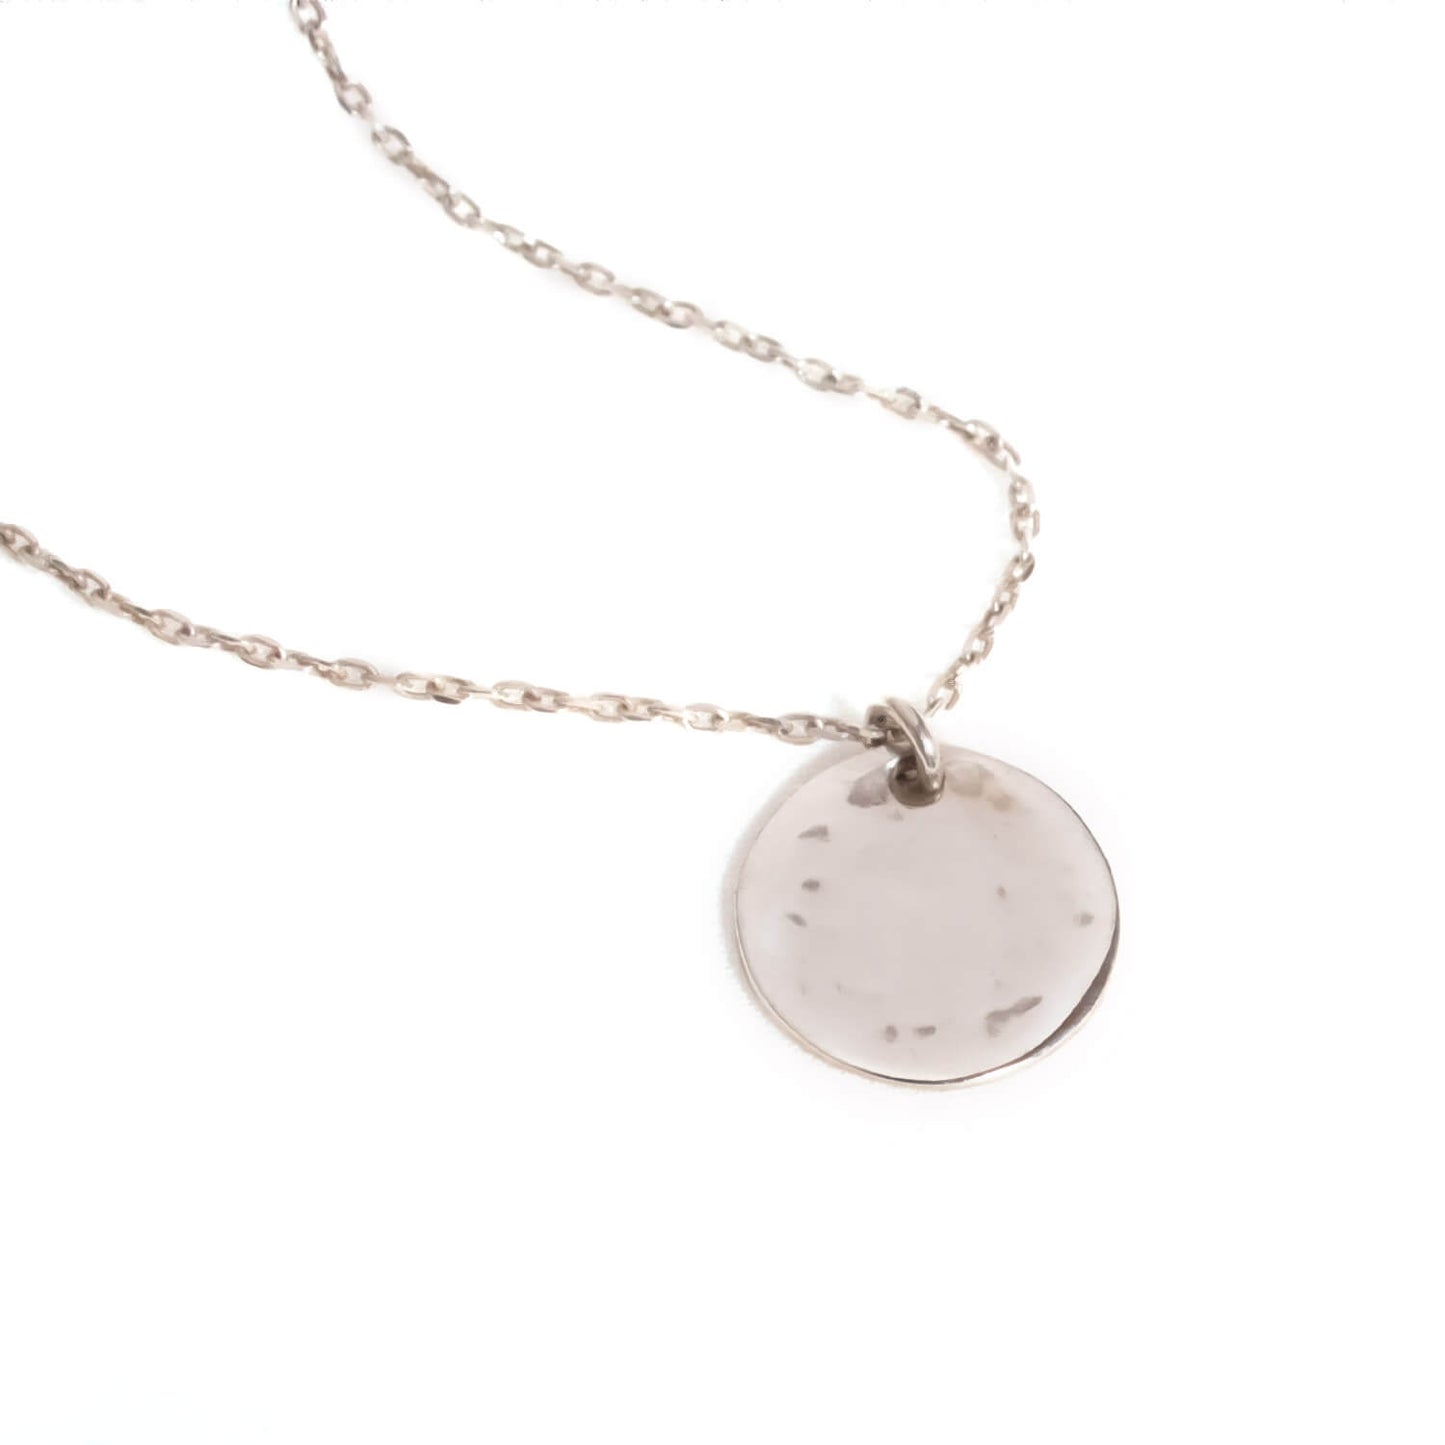 Silver925 Ripple Coin Necklace | NOVAC-long